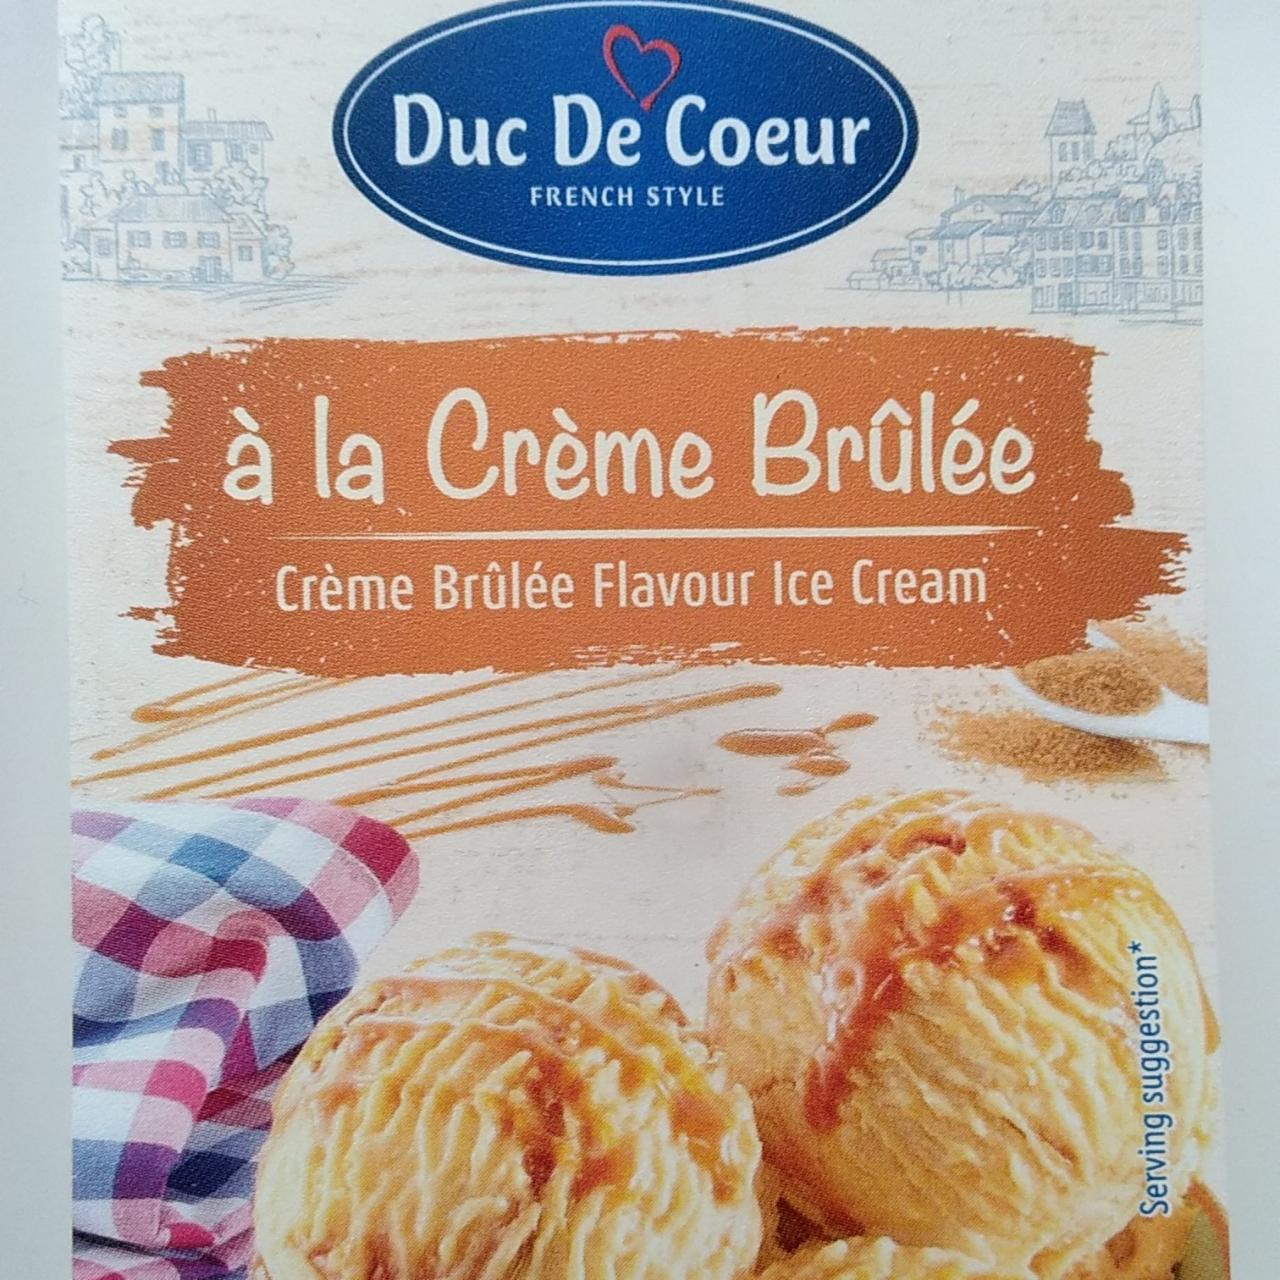 Képek - Crème brûlée ízű jégkrém Duc De Coeur